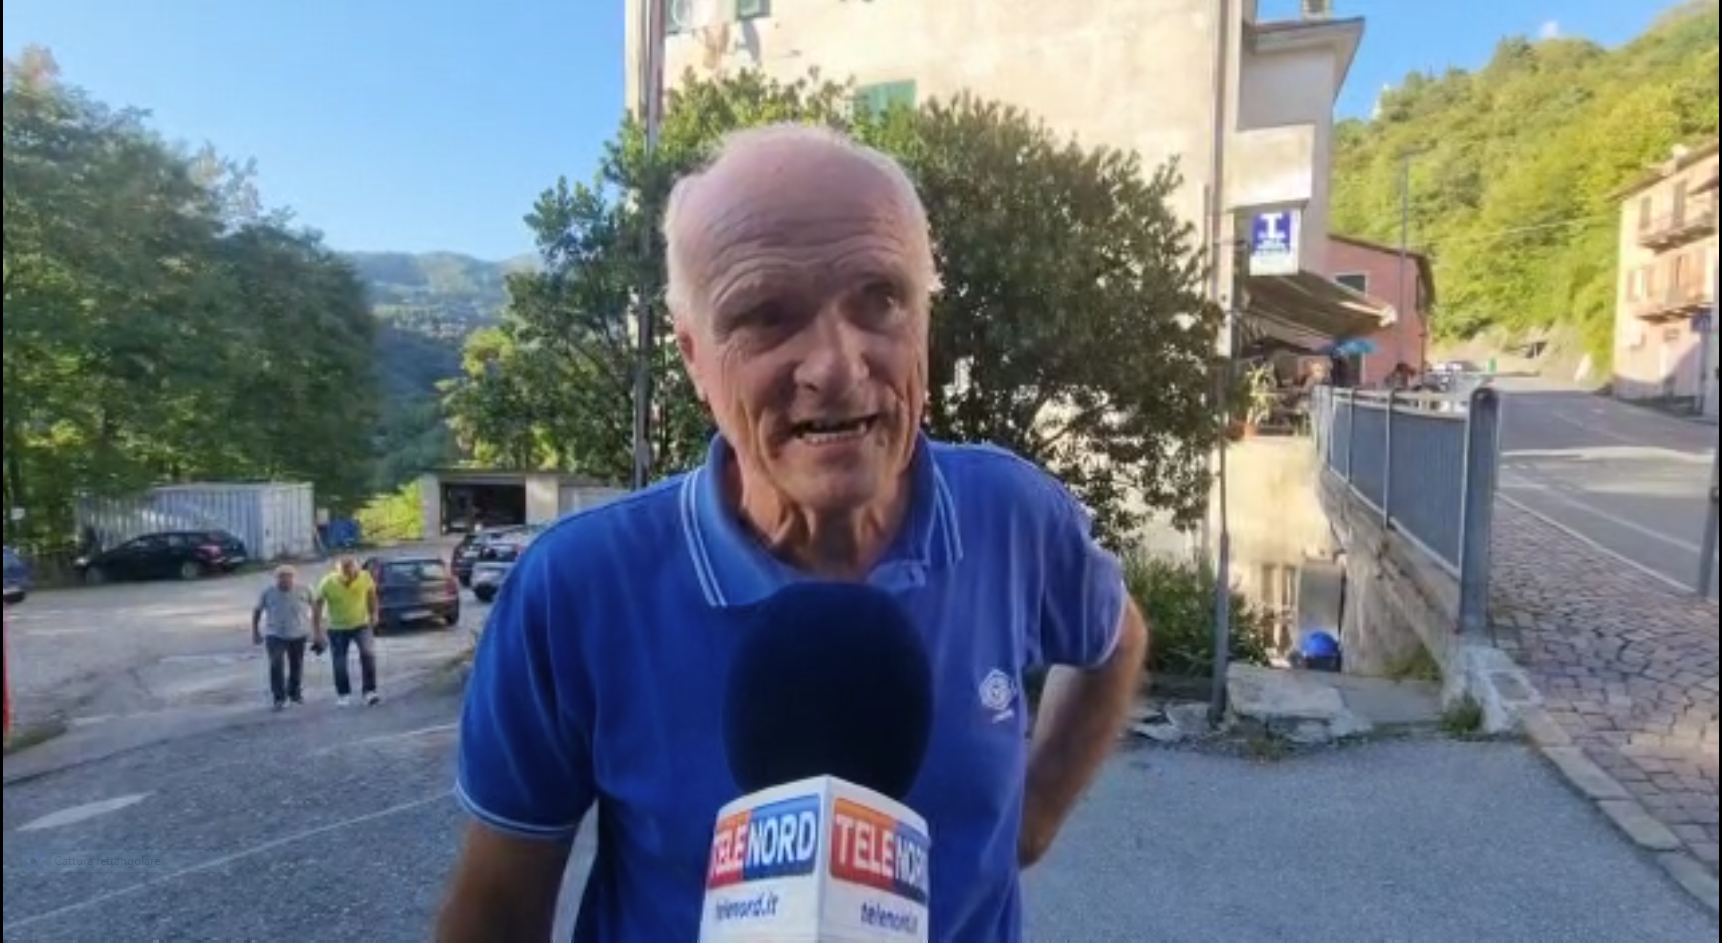 Terromoto Genova, sindaco Bargagli: "Negli anni passati qualche scossa, ma non così forte"